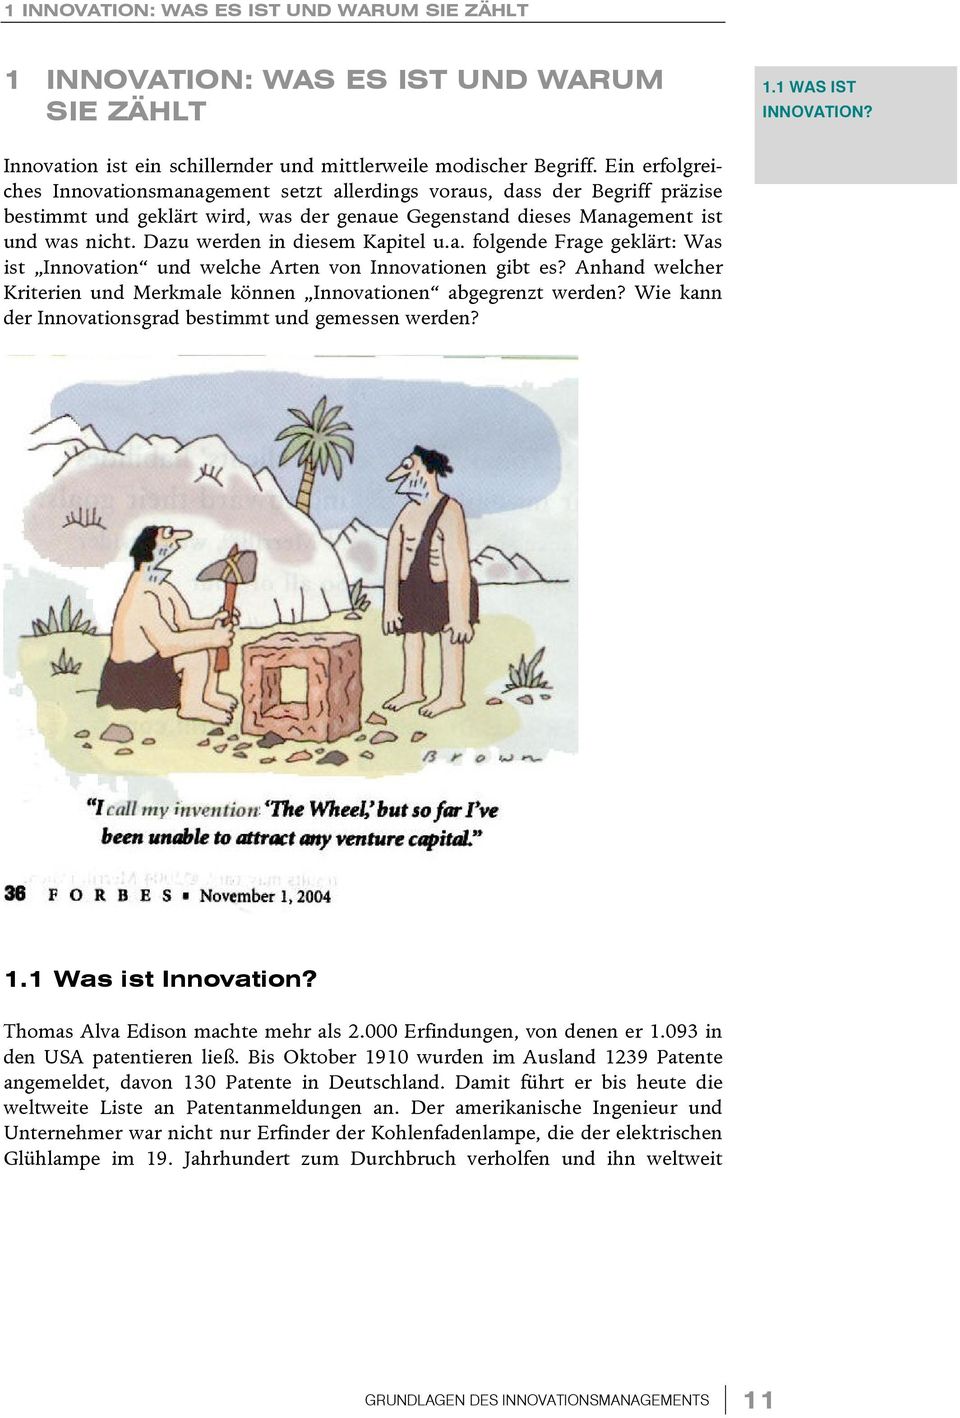 Dazu werden in diesem Kapitel u.a. folgende Frage geklärt: Was ist Innovation und welche Arten von Innovationen gibt es? Anhand welcher Kriterien und Merkmale können Innovationen abgegrenzt werden?